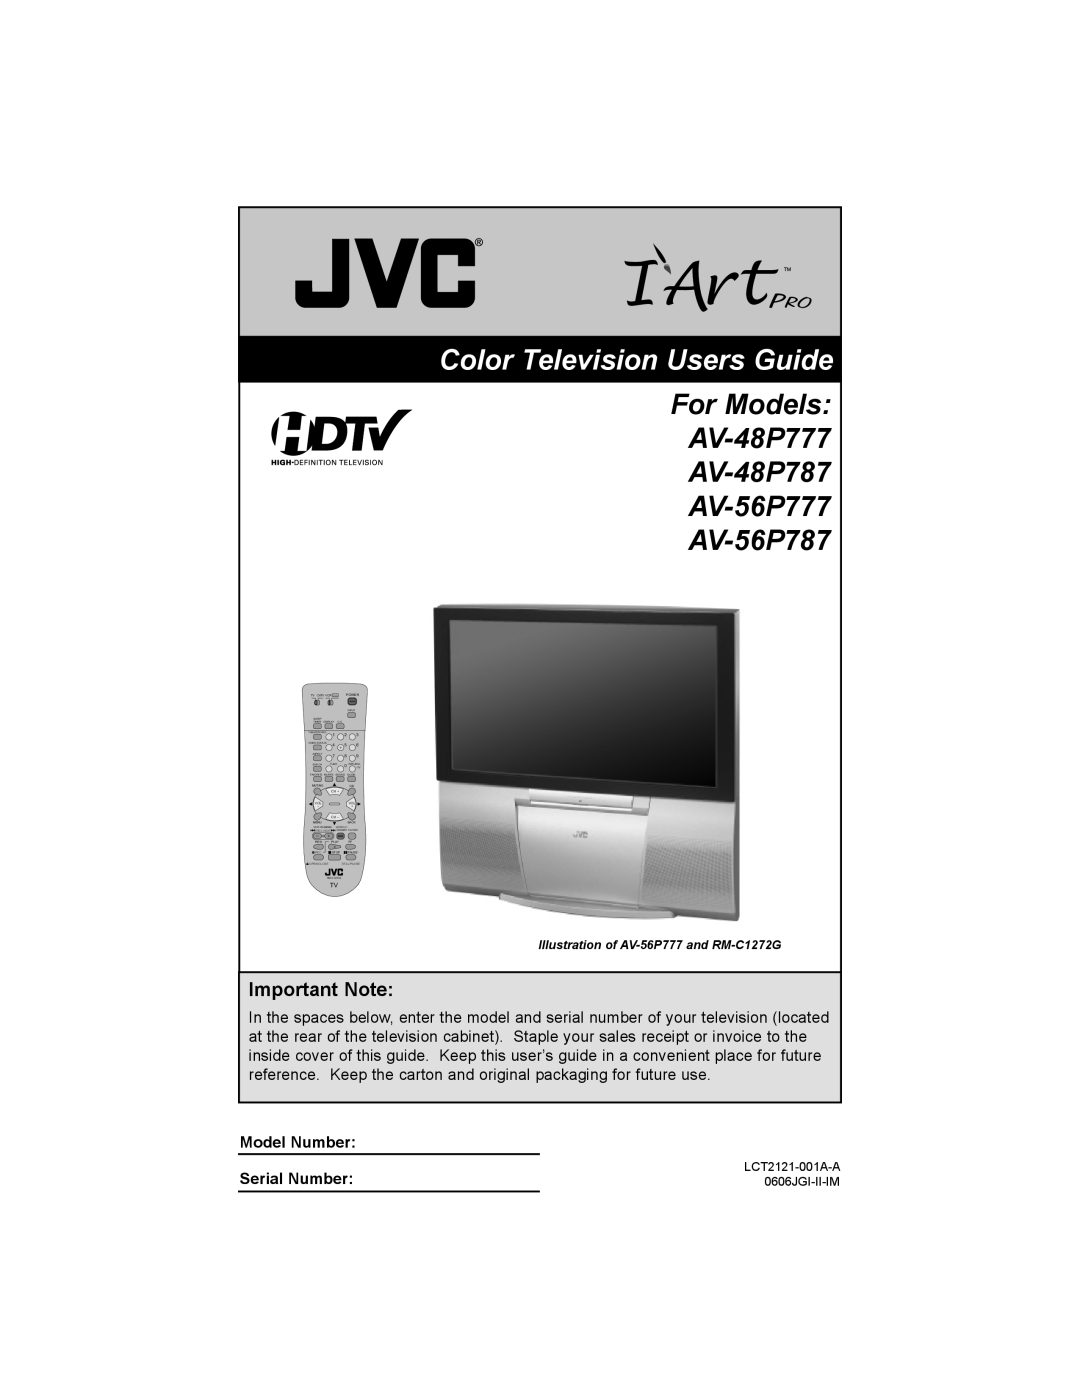 JVC AV-56P787, AV 48P777 manual Important Note, Color Television Users Guide, For Models AV-48P777 AV-48P787 AV-56P777 